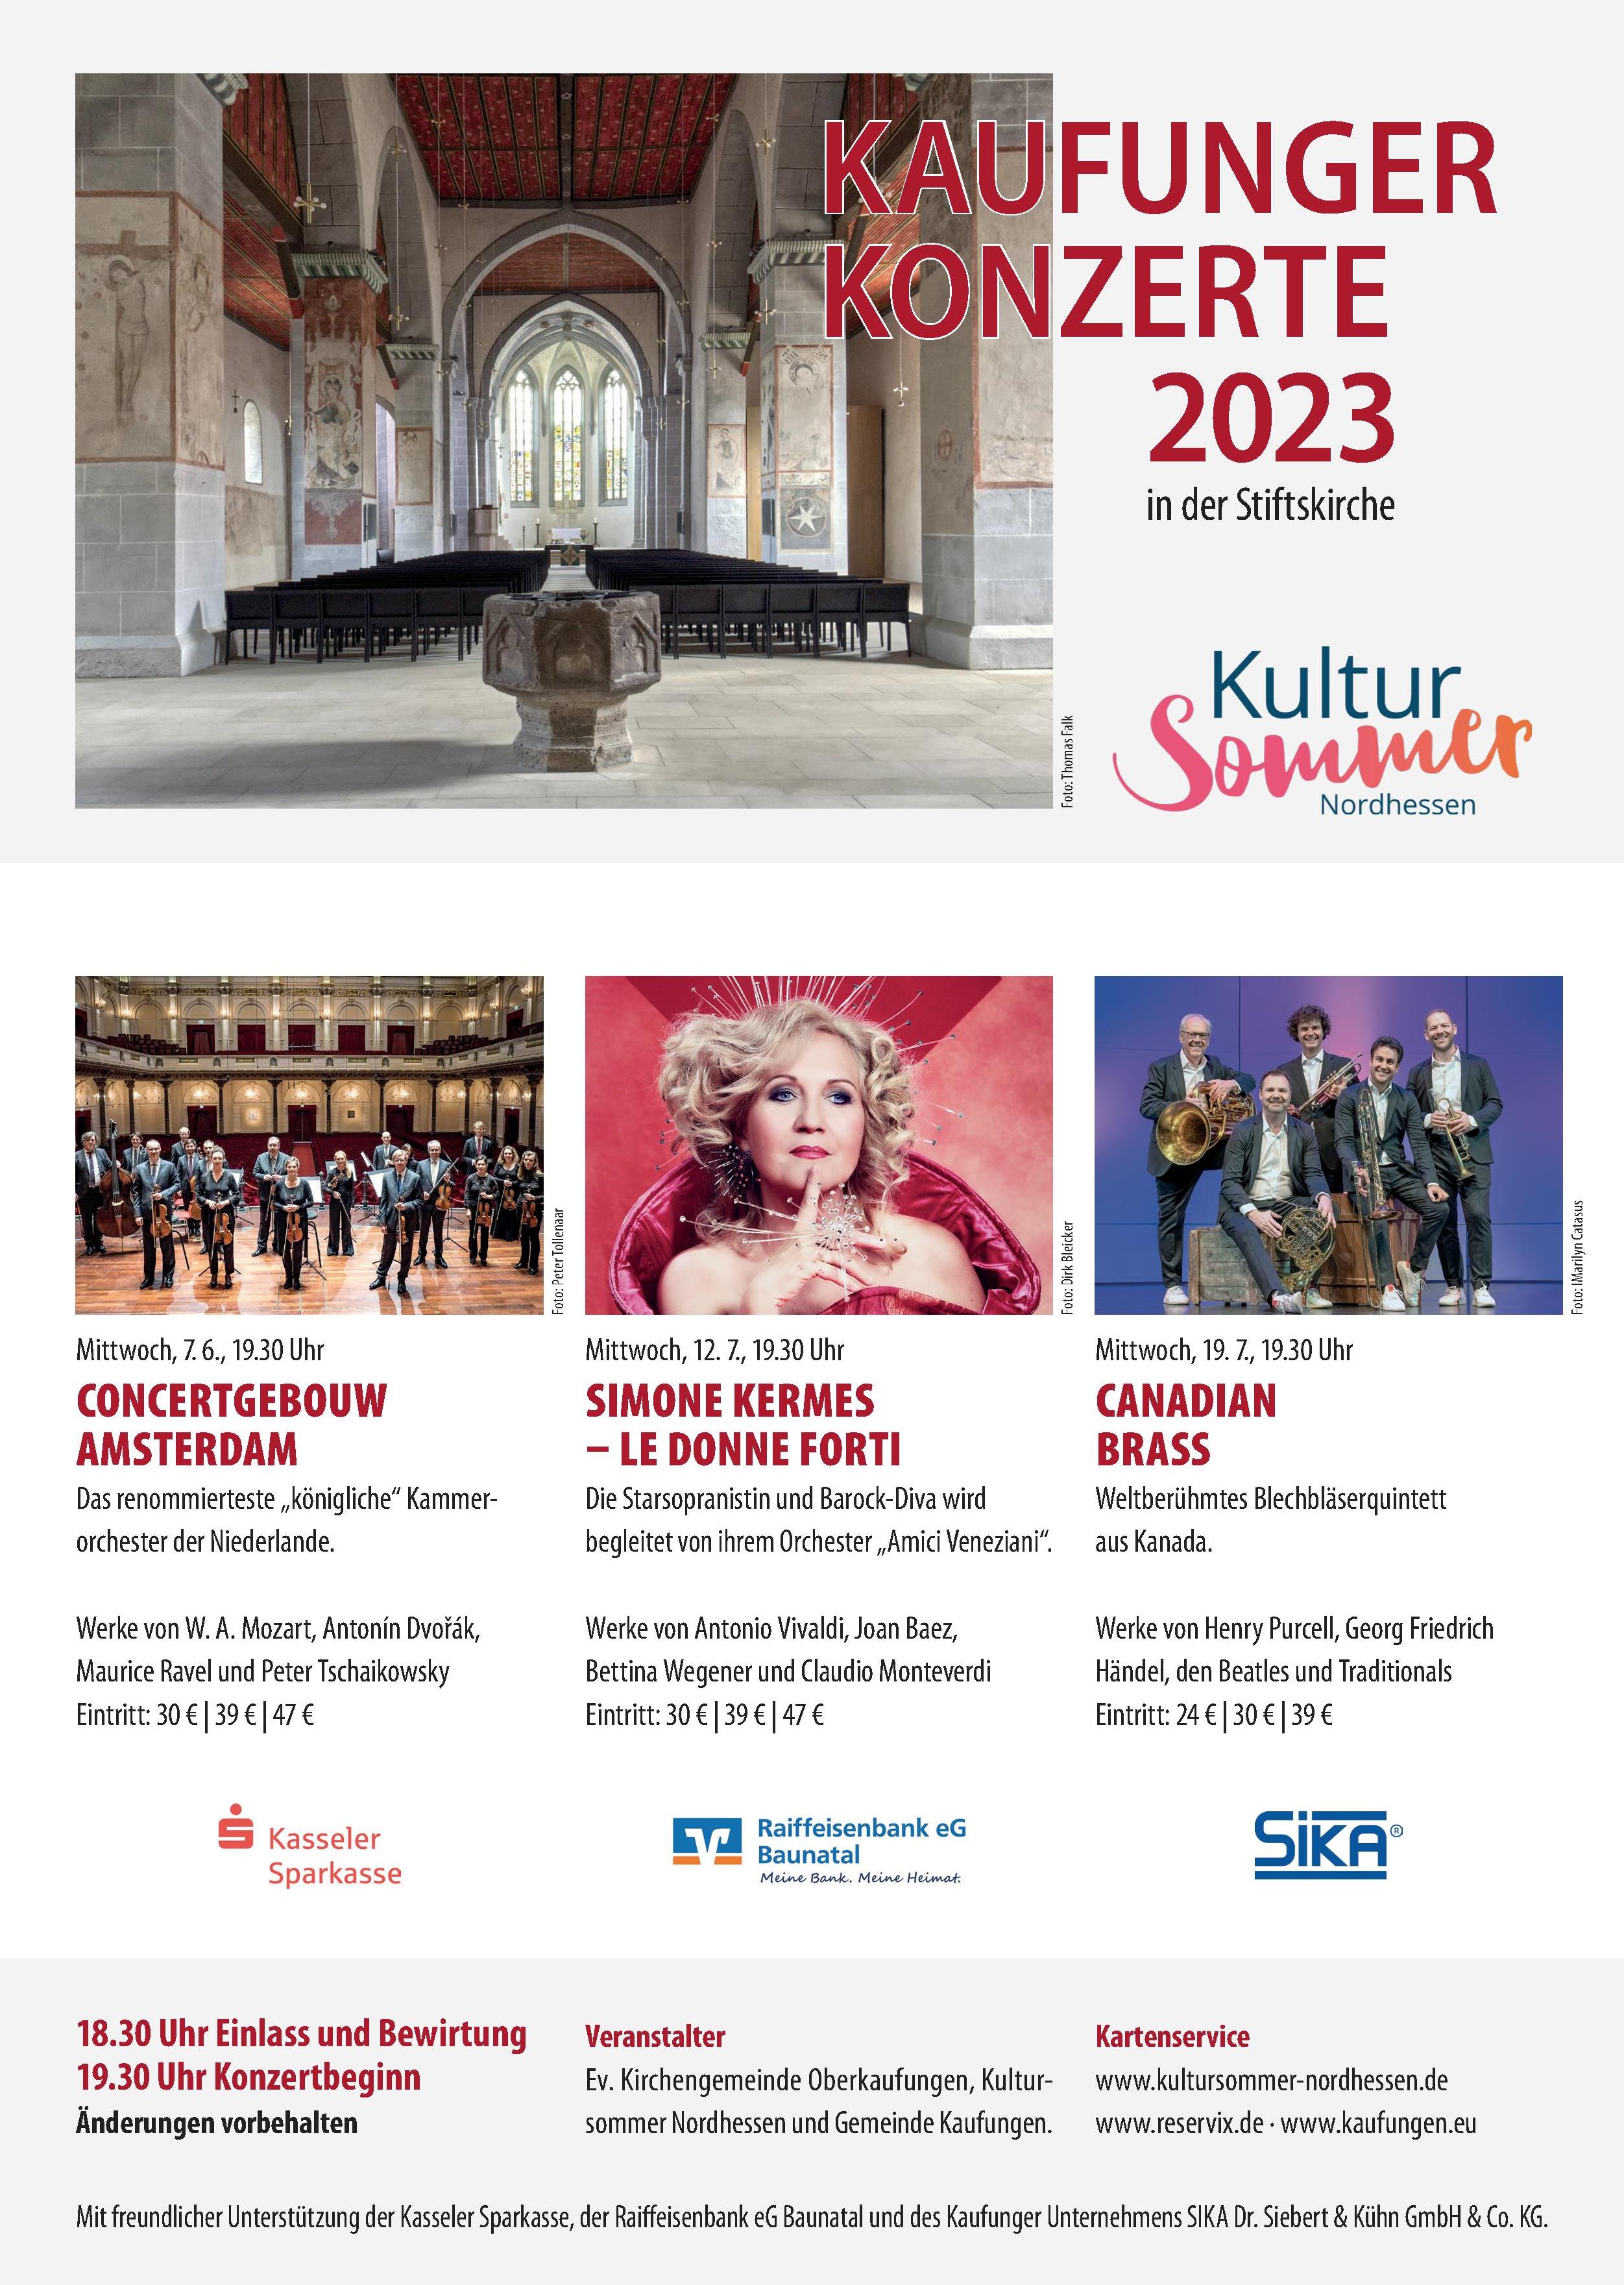 Bild vergrößern: Kaufunger Konzerte 2023